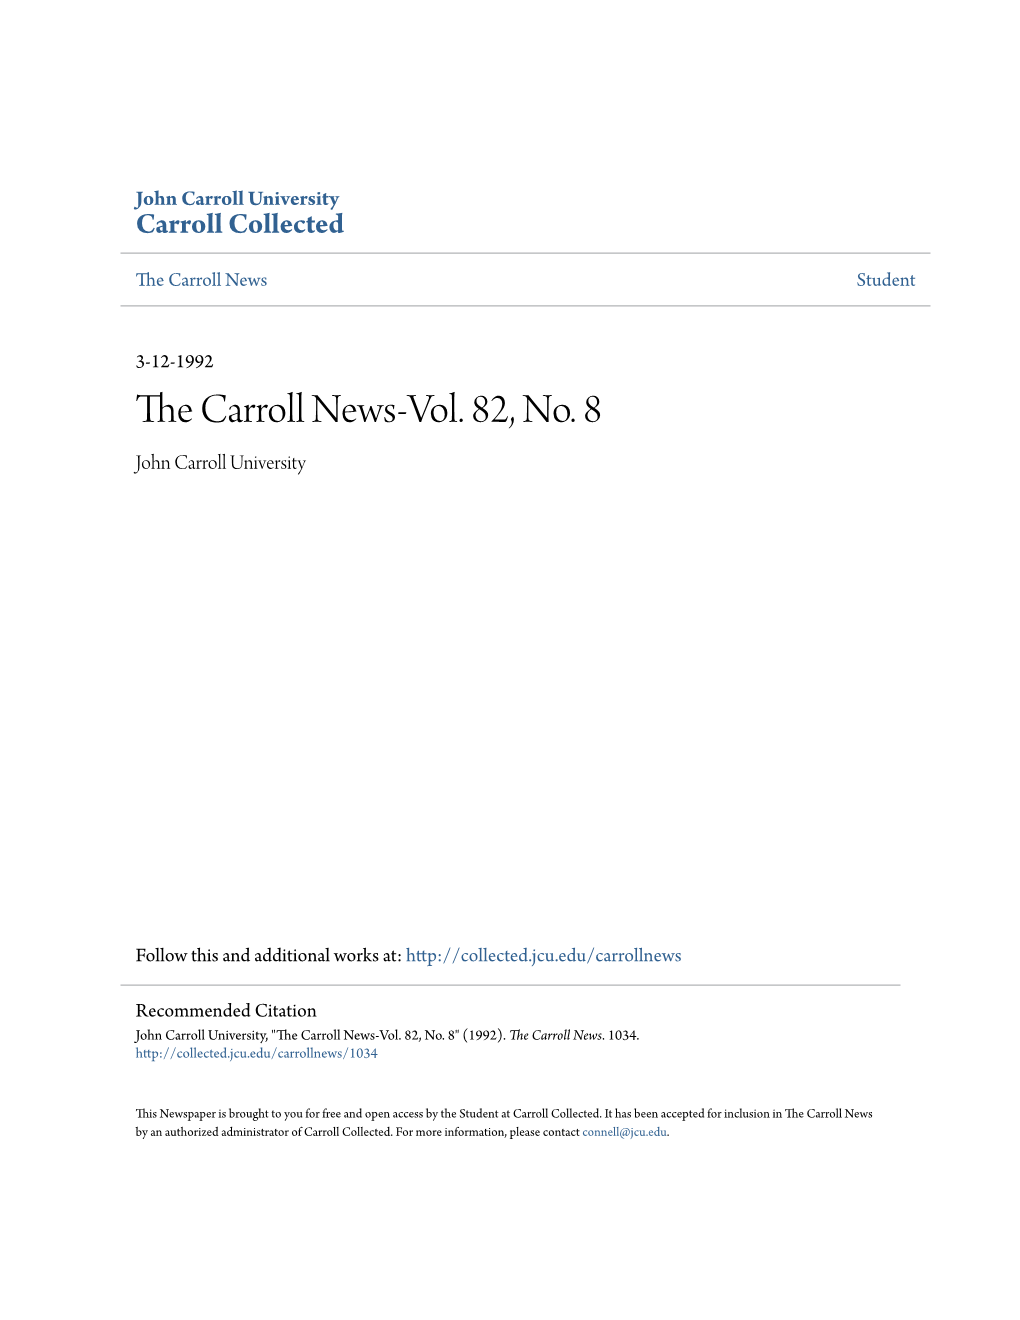 The Carroll News-Vol. 82, No. 8